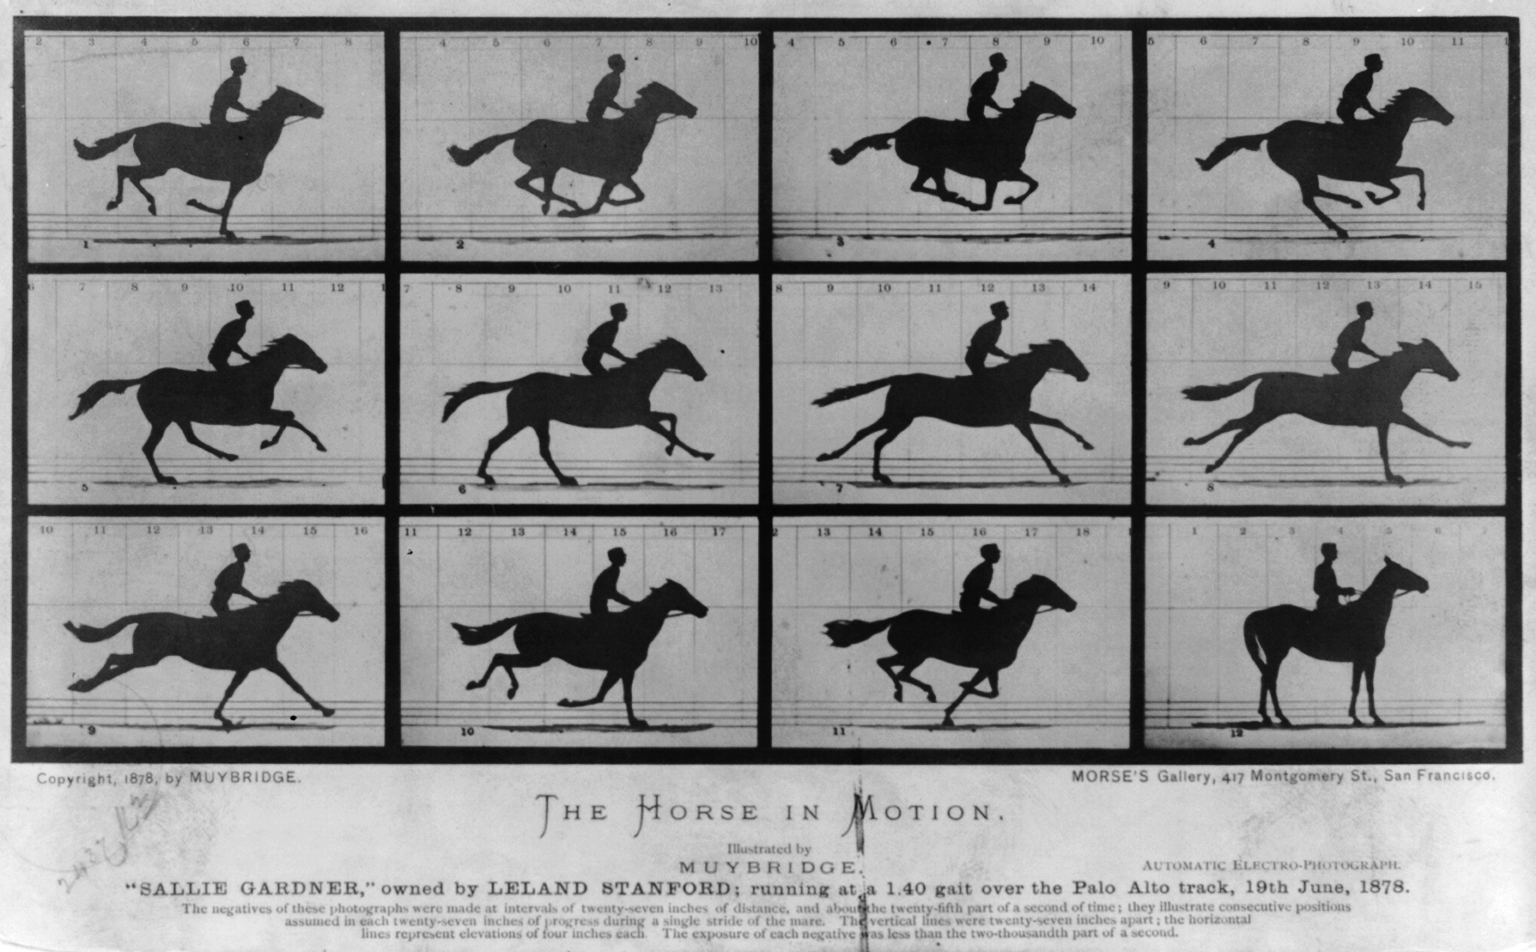 الحصان في حركة. "سالي غاردنر"، مِلك ليلاند ستانفورد؛ يجري بسرعة 1:40 فوق مسار بالو ألتو، 19 يونيو 1878 by Eadweard Muybridge - 1878 - - 